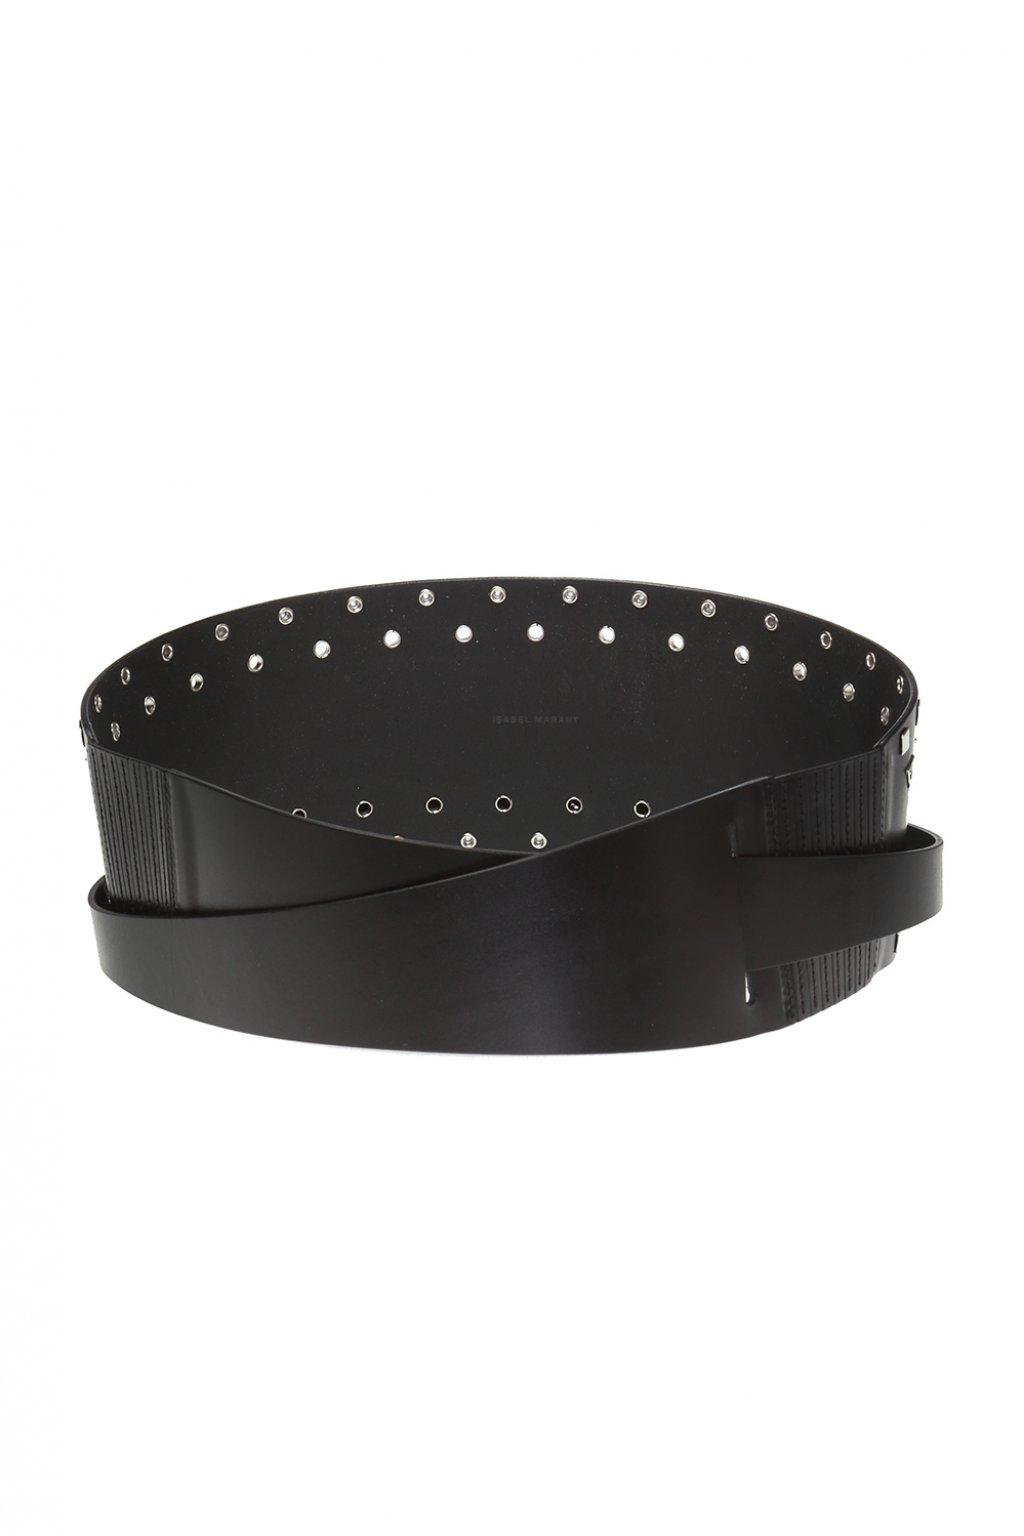 Isabel Marant Leather Embellished Belt in Black - Lyst